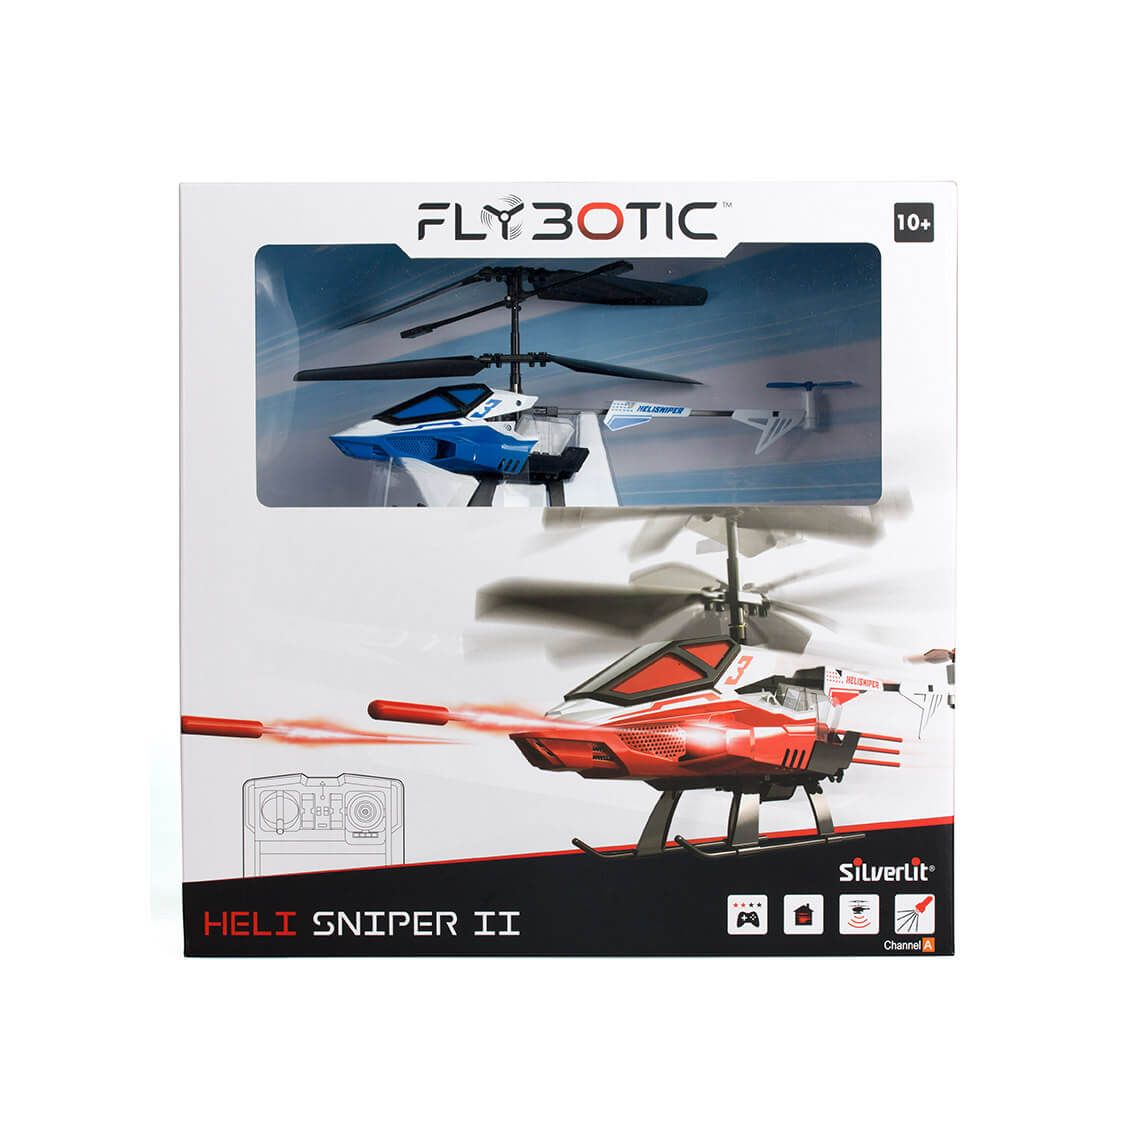 Heli Sniper II - FlyBotic | Silverlit